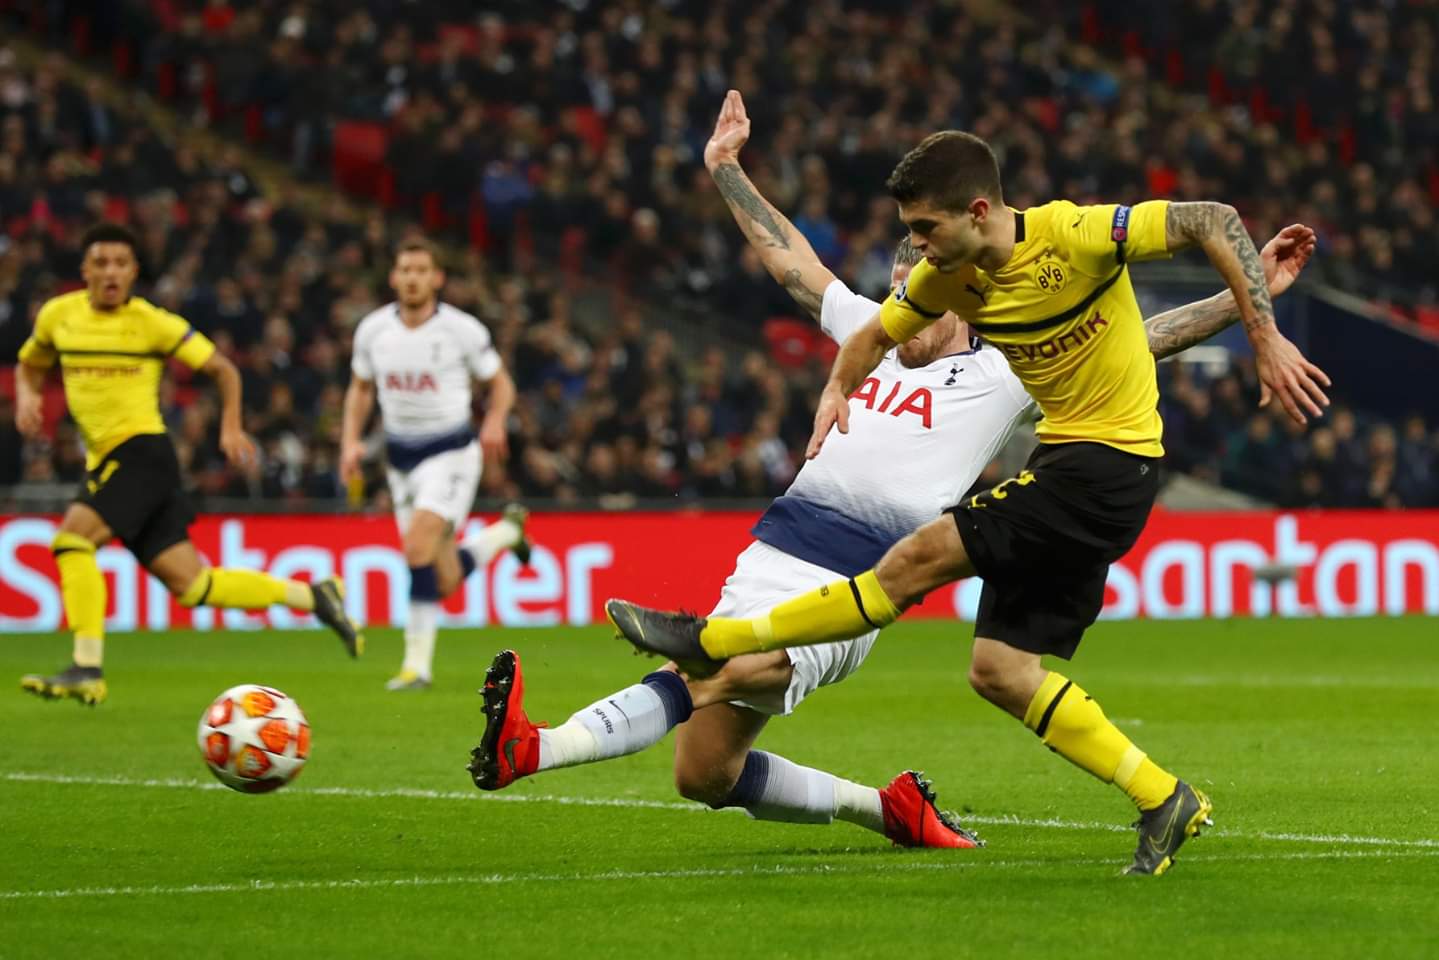 Shėnohet goli i parė nė ndeshjen, Tottenham-Dortmund